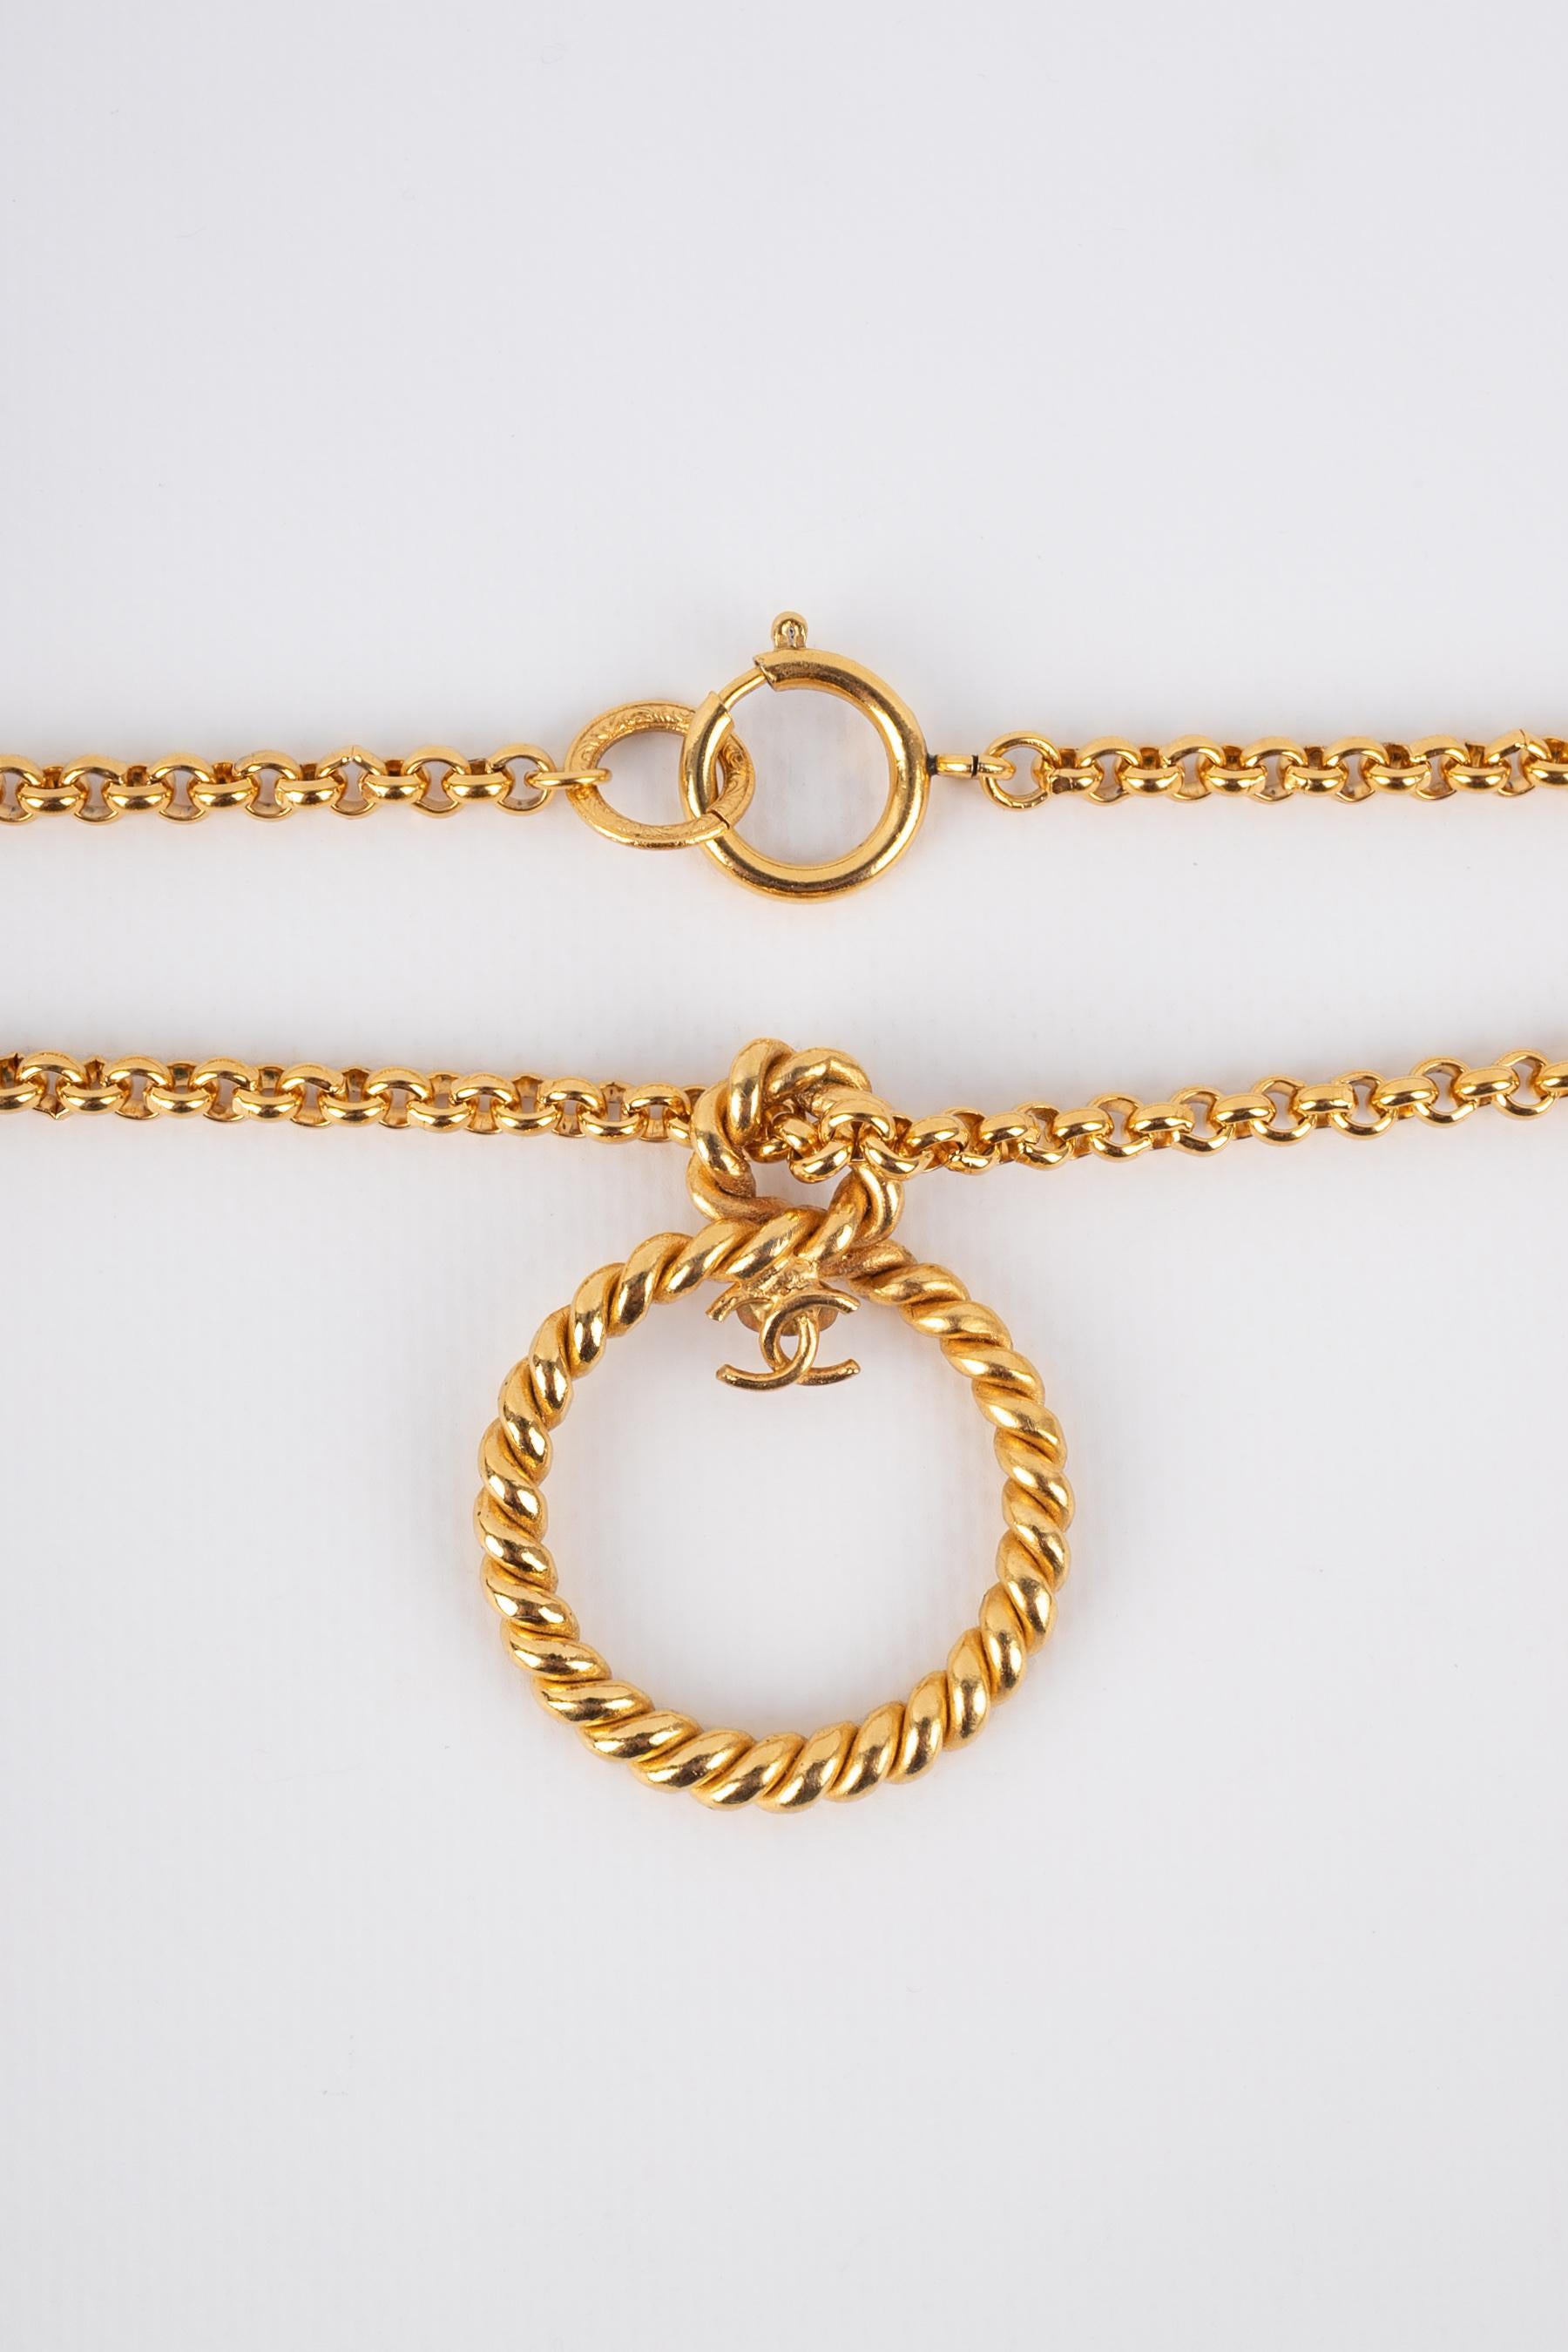 Chanel pendant necklace In Excellent Condition For Sale In SAINT-OUEN-SUR-SEINE, FR